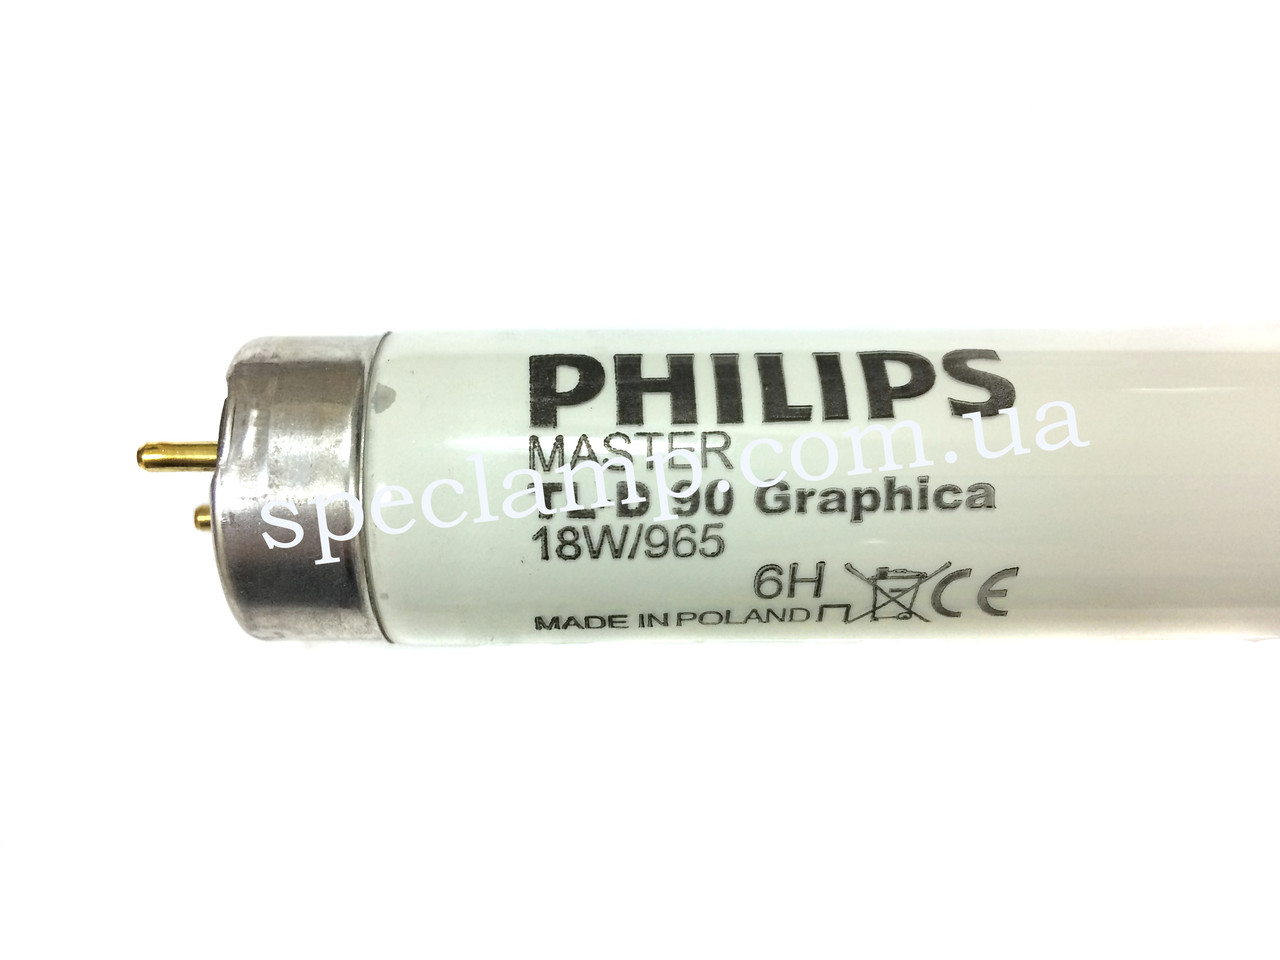 Лампа люмінесцентна MASTER TL-D 90 Graphica 18W/965 G13 Philips